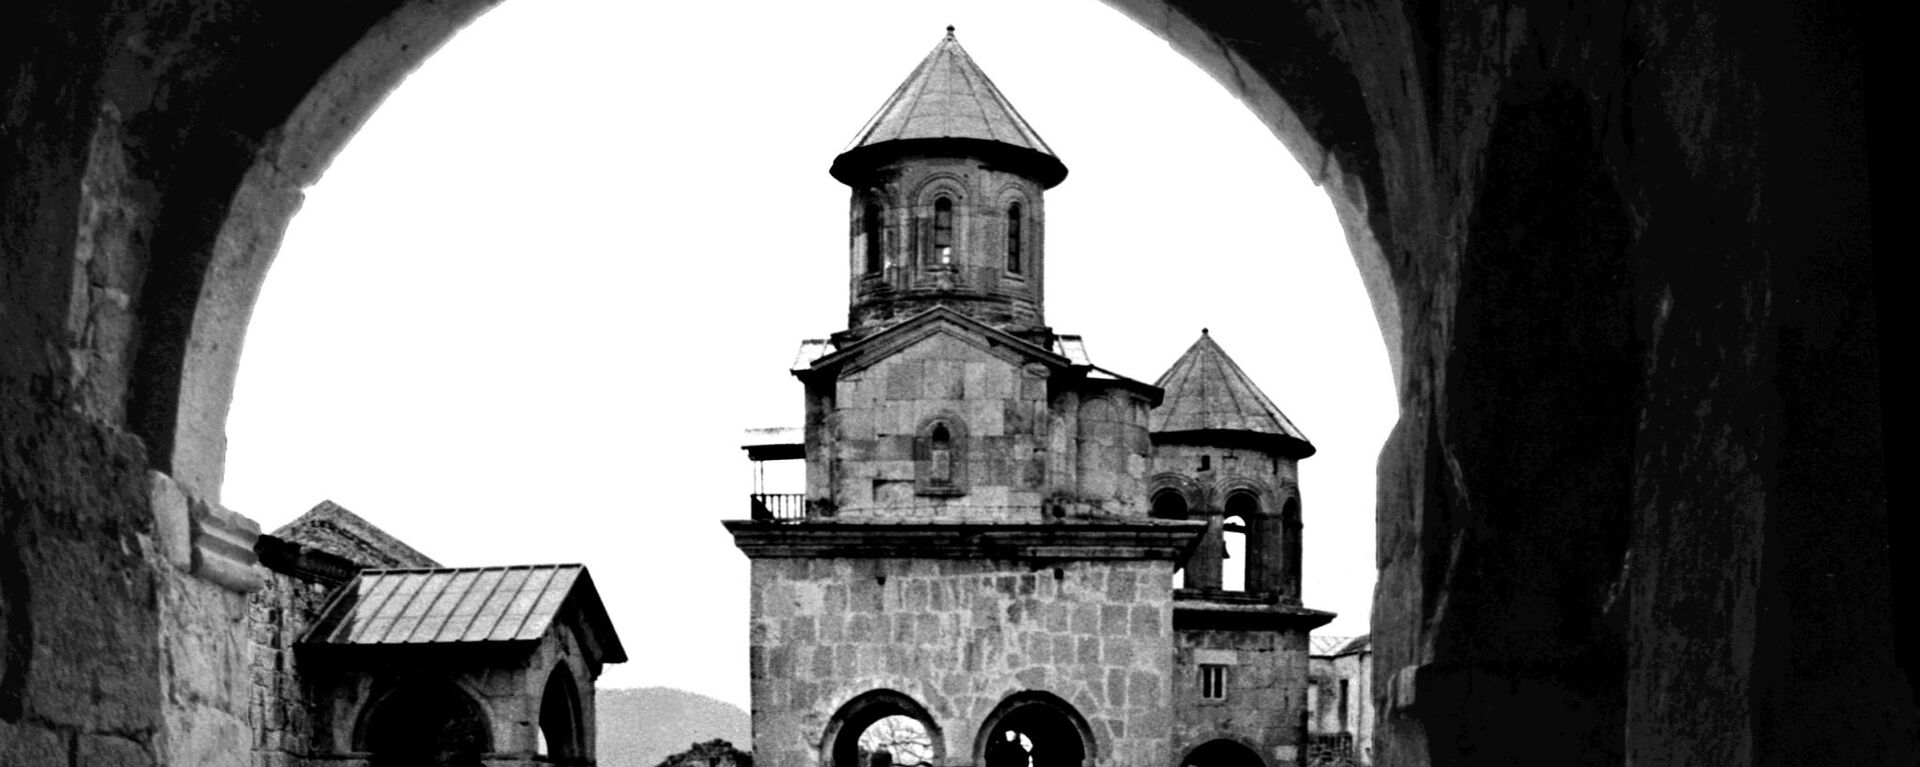 Брусчатые мостовые - брусчатка в храме Гелати до реконструкции, архивное фото - Sputnik Грузия, 1920, 20.05.2021